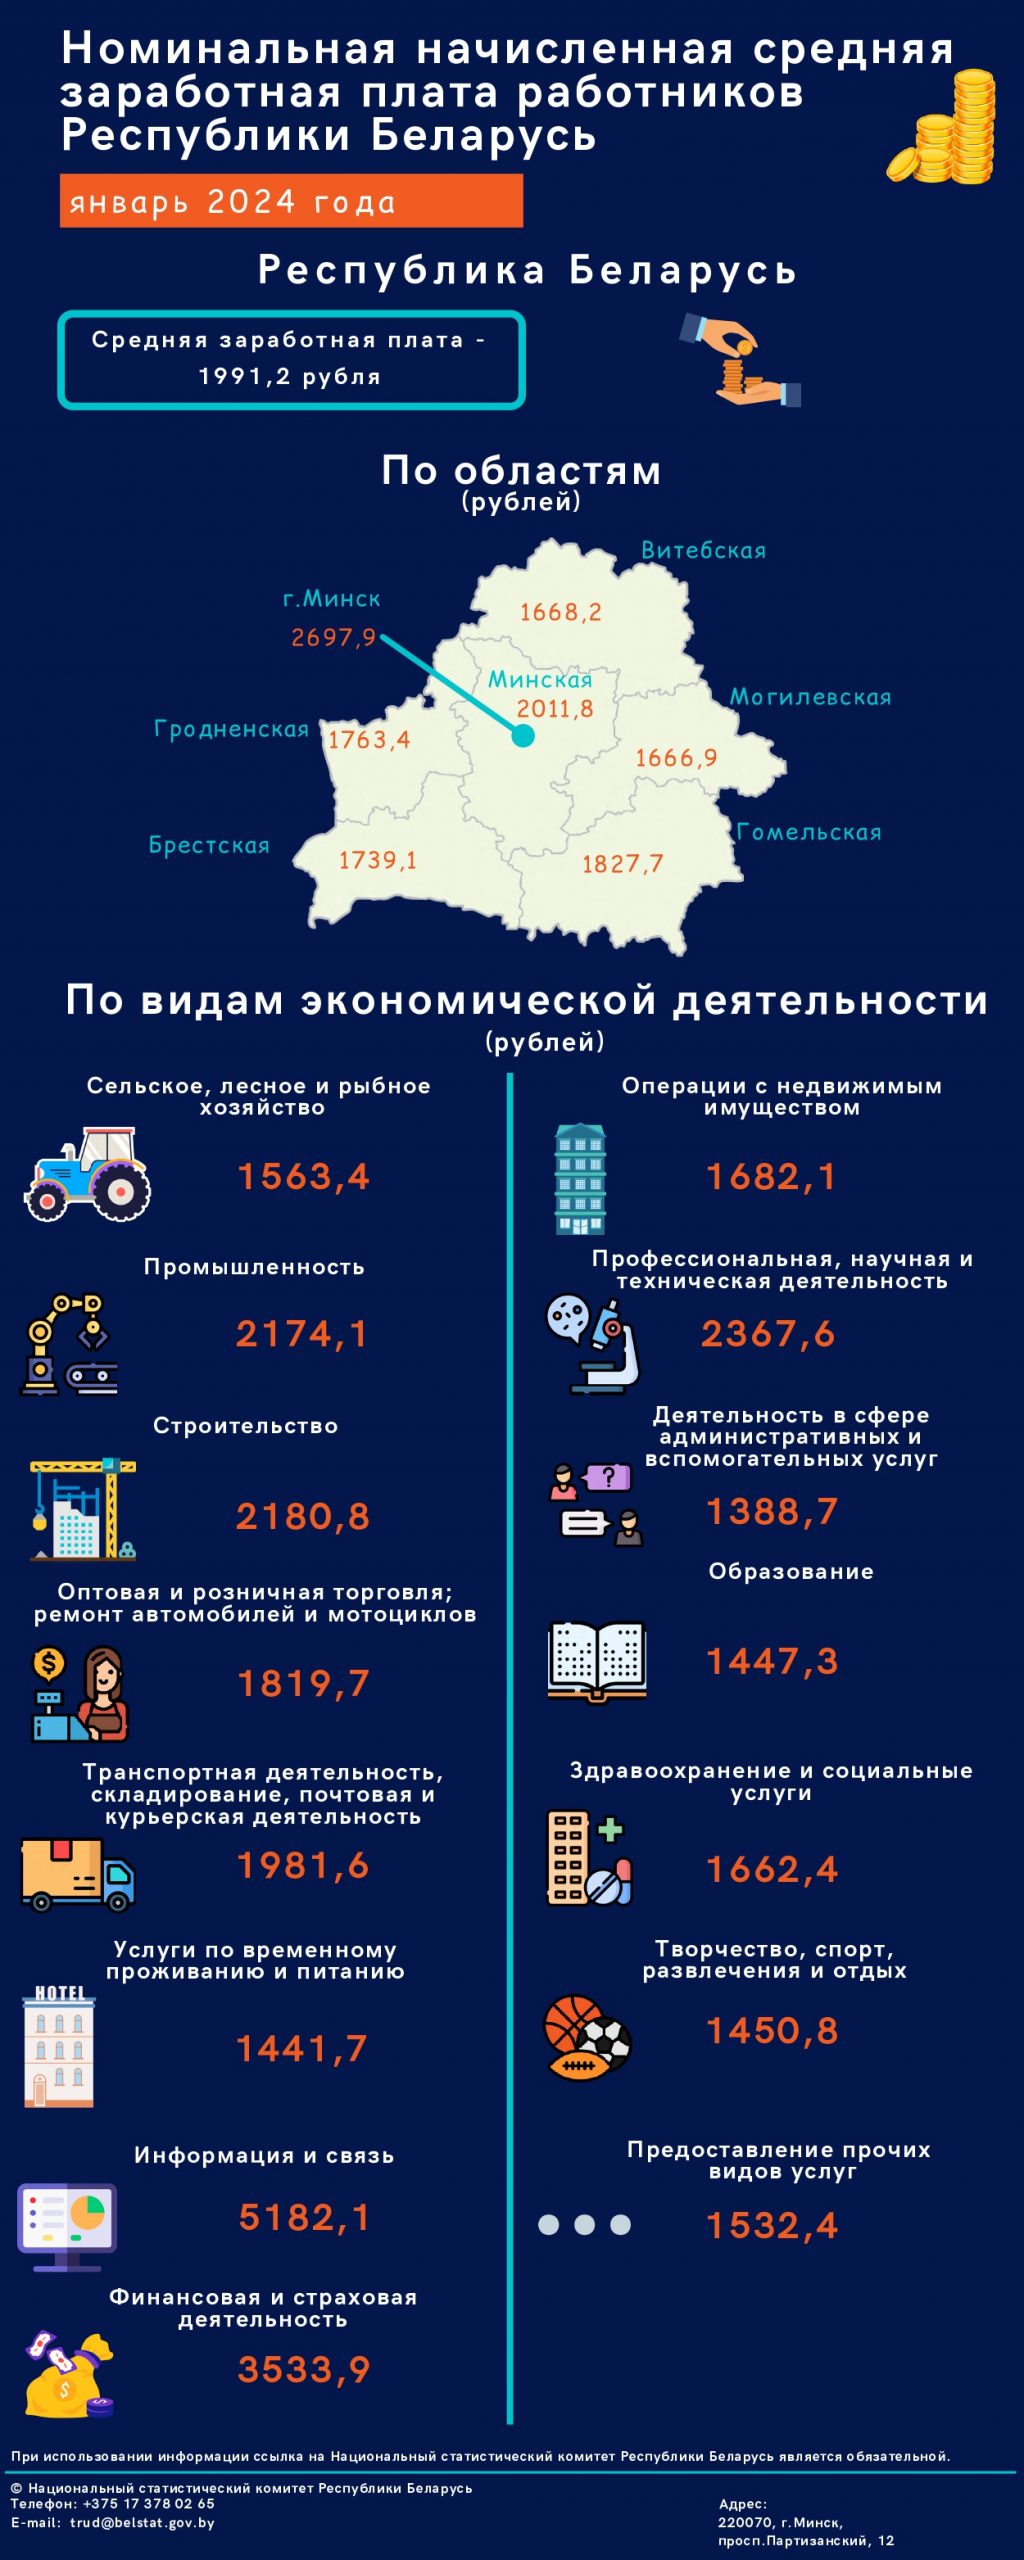 В одном из районов Гродненщины получают максимальную зарплату по стране — больше, чем в Минске